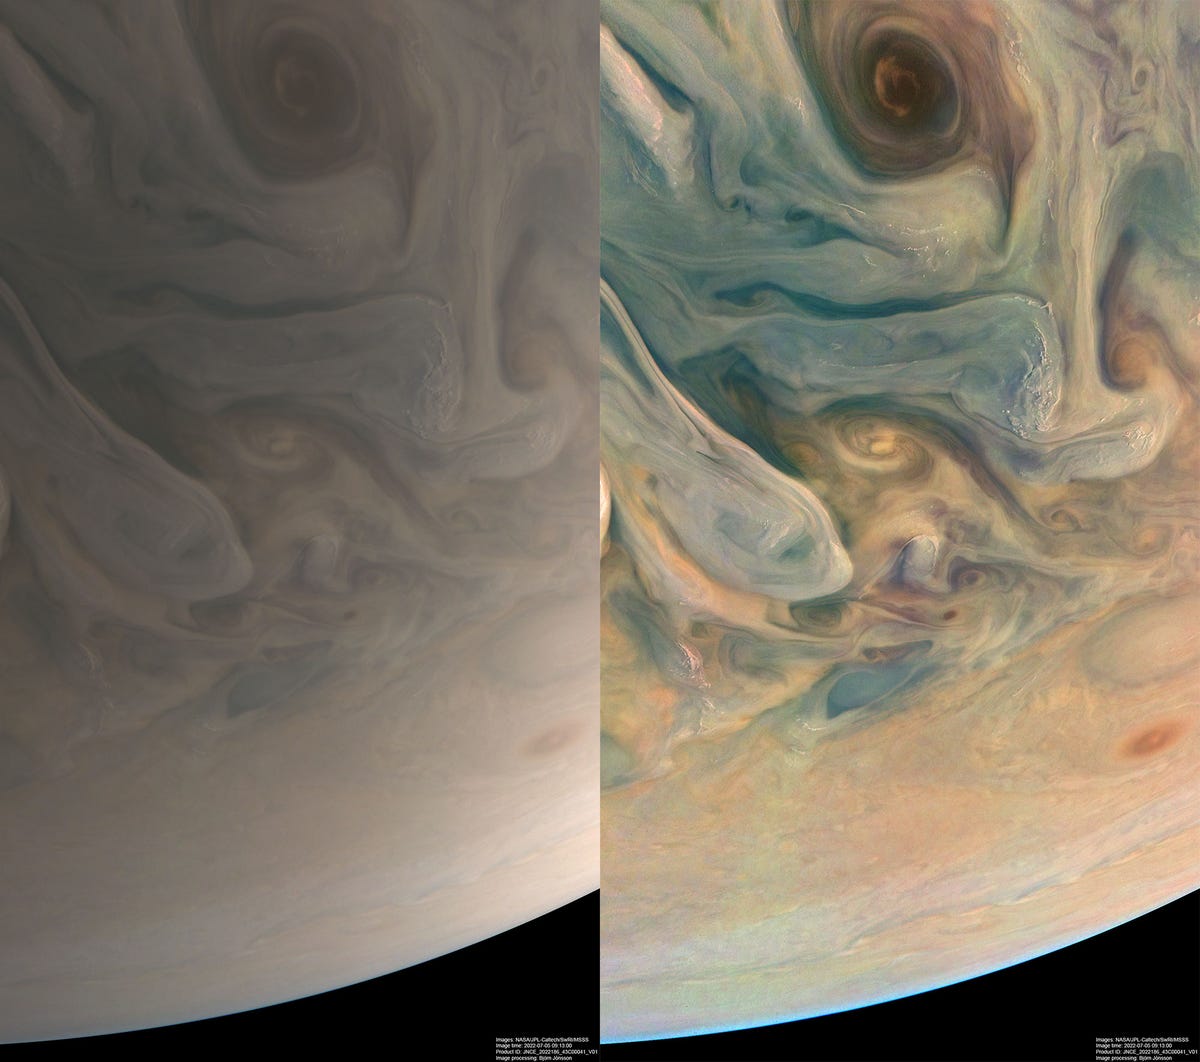 À esquerda está uma versão bege suave de Júpiter.  À direita está a mesma imagem, exceto pelos tons de azul, laranja e amarelo.